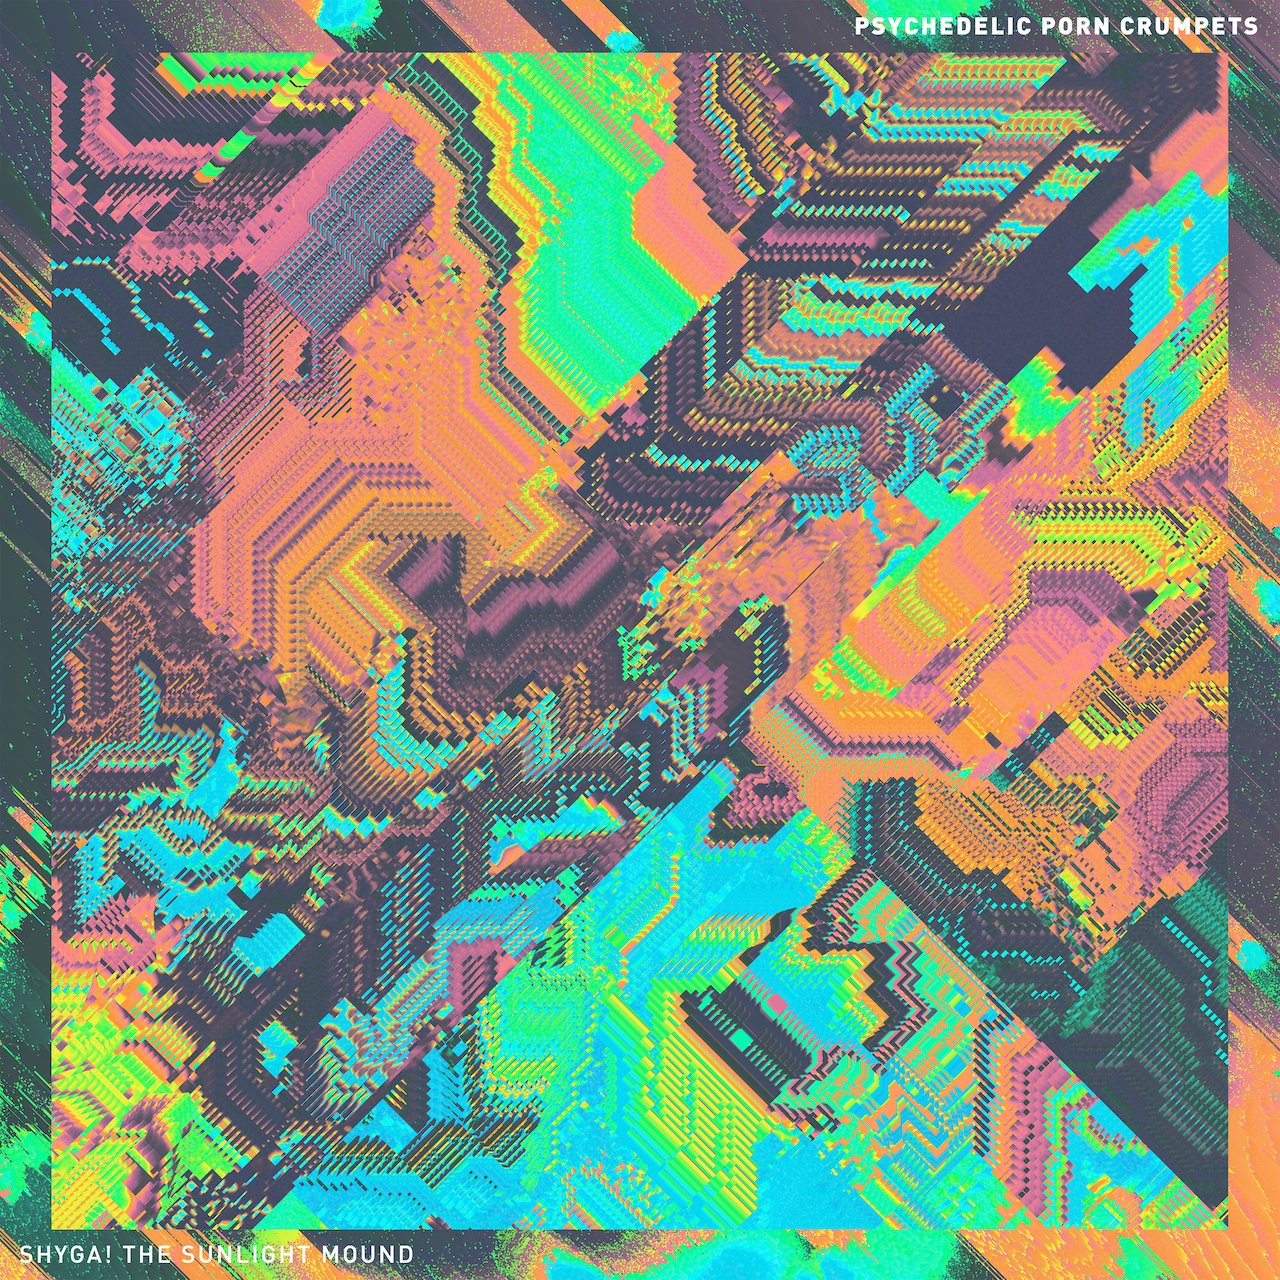 PSYCHEDELIC PORN CRUMPETS - Shyga! The Sunlight Mound - LP - Orange / White Splatter Vinyl